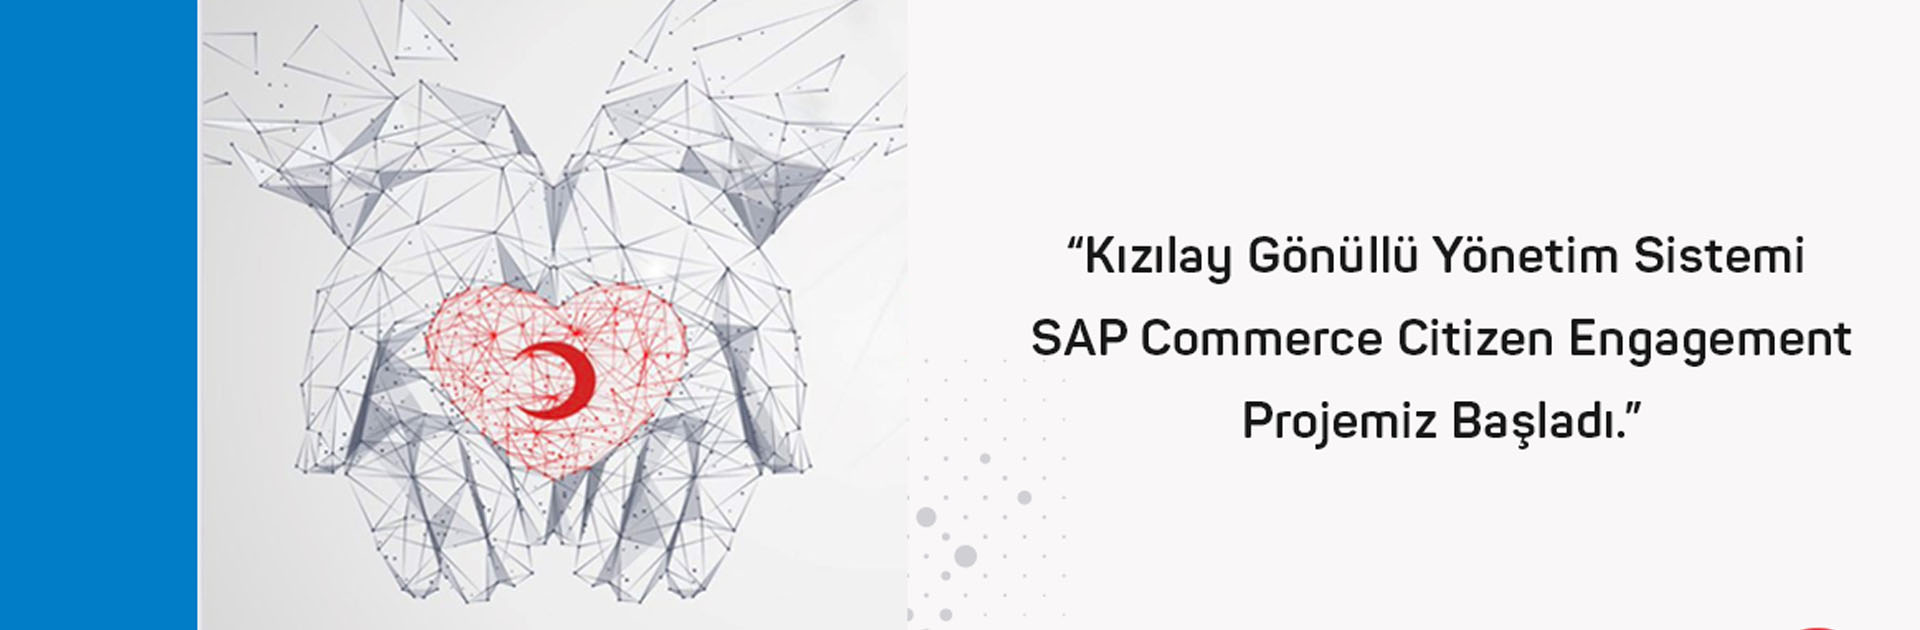 Kızılay Gönüllü Yönetim Sistemi SAP Commerce Citizen Engagement Projemiz Başladı.